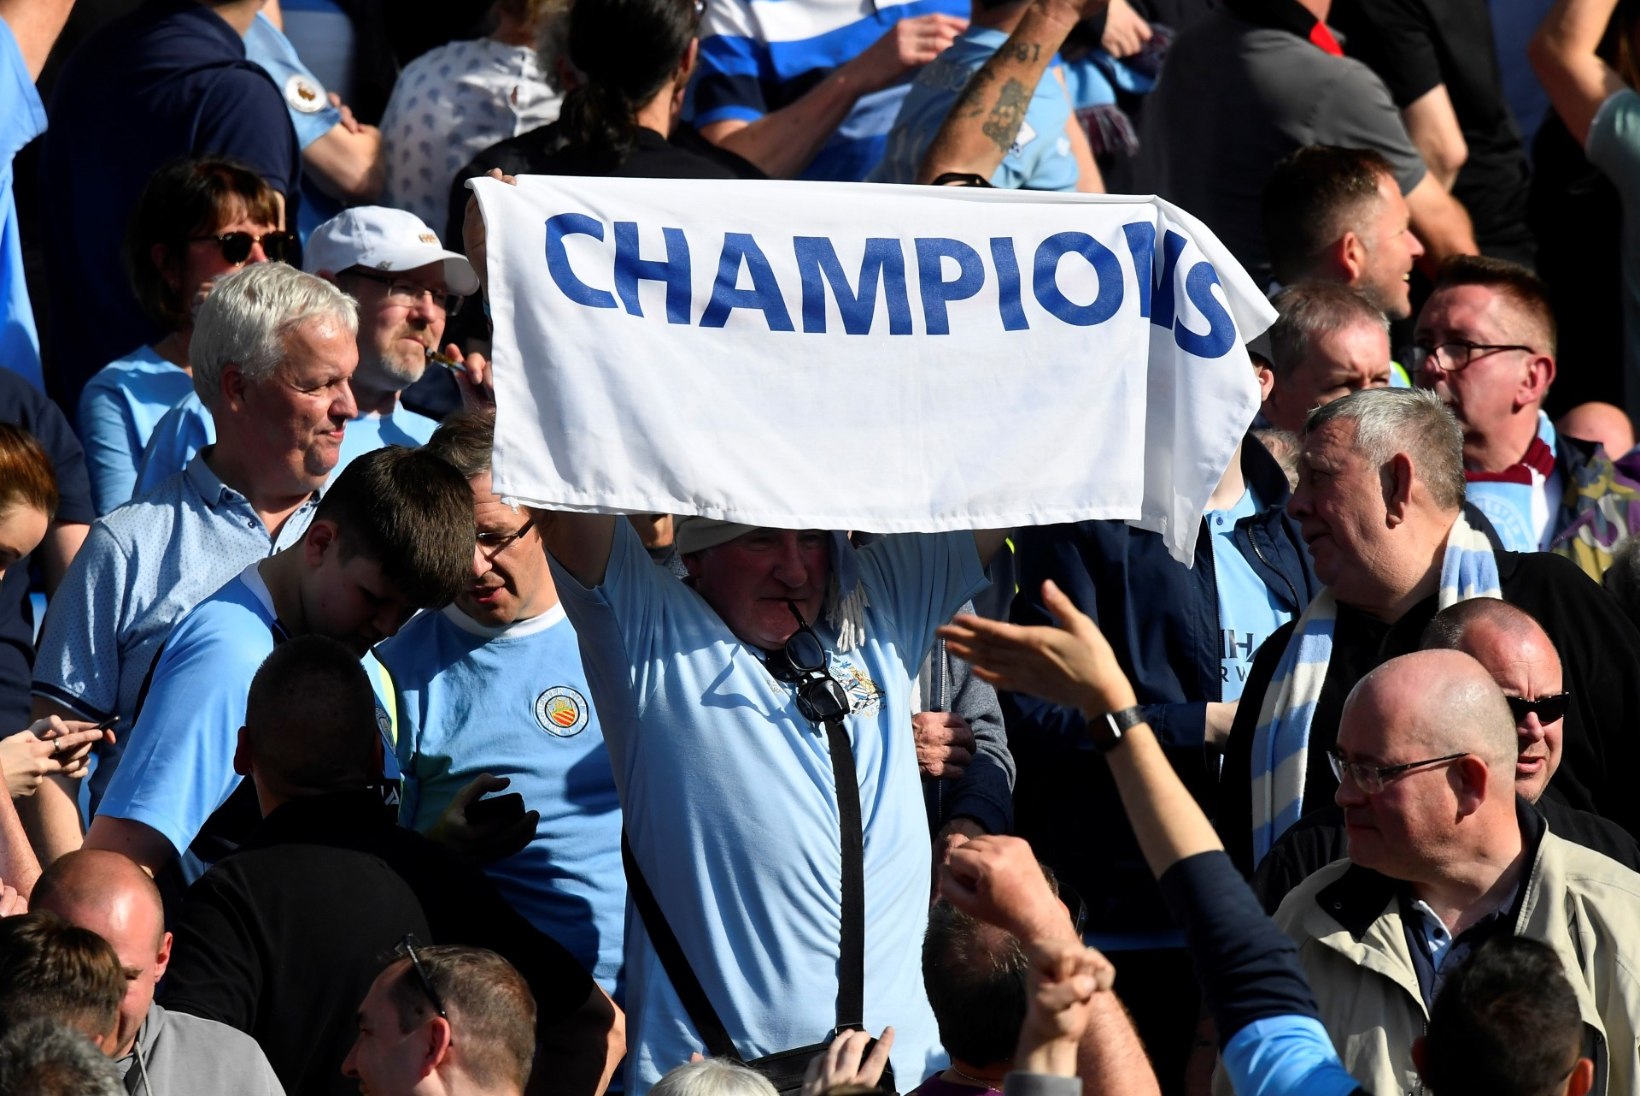 FOTOD | TŠEMPIONID! Manchester City mängis pöidlahoidjate närvidega, kuid meistritiitlit käest ei andnud